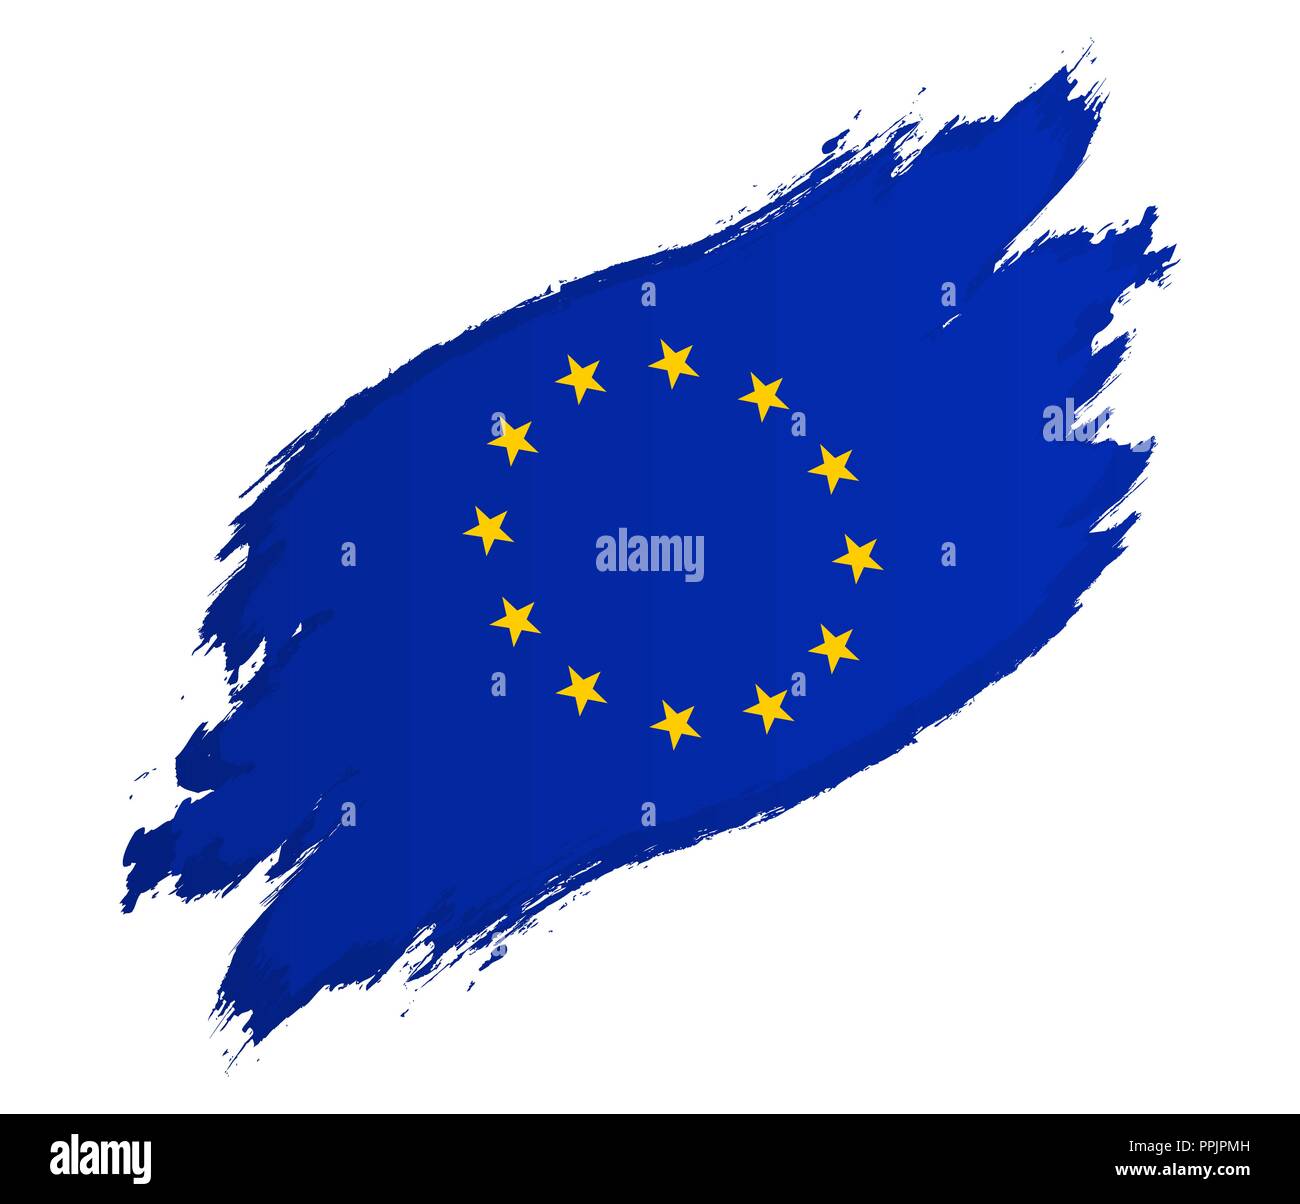 Pavillon de l'Union européenne grunge style vector illustration isolé sur fond blanc Illustration de Vecteur